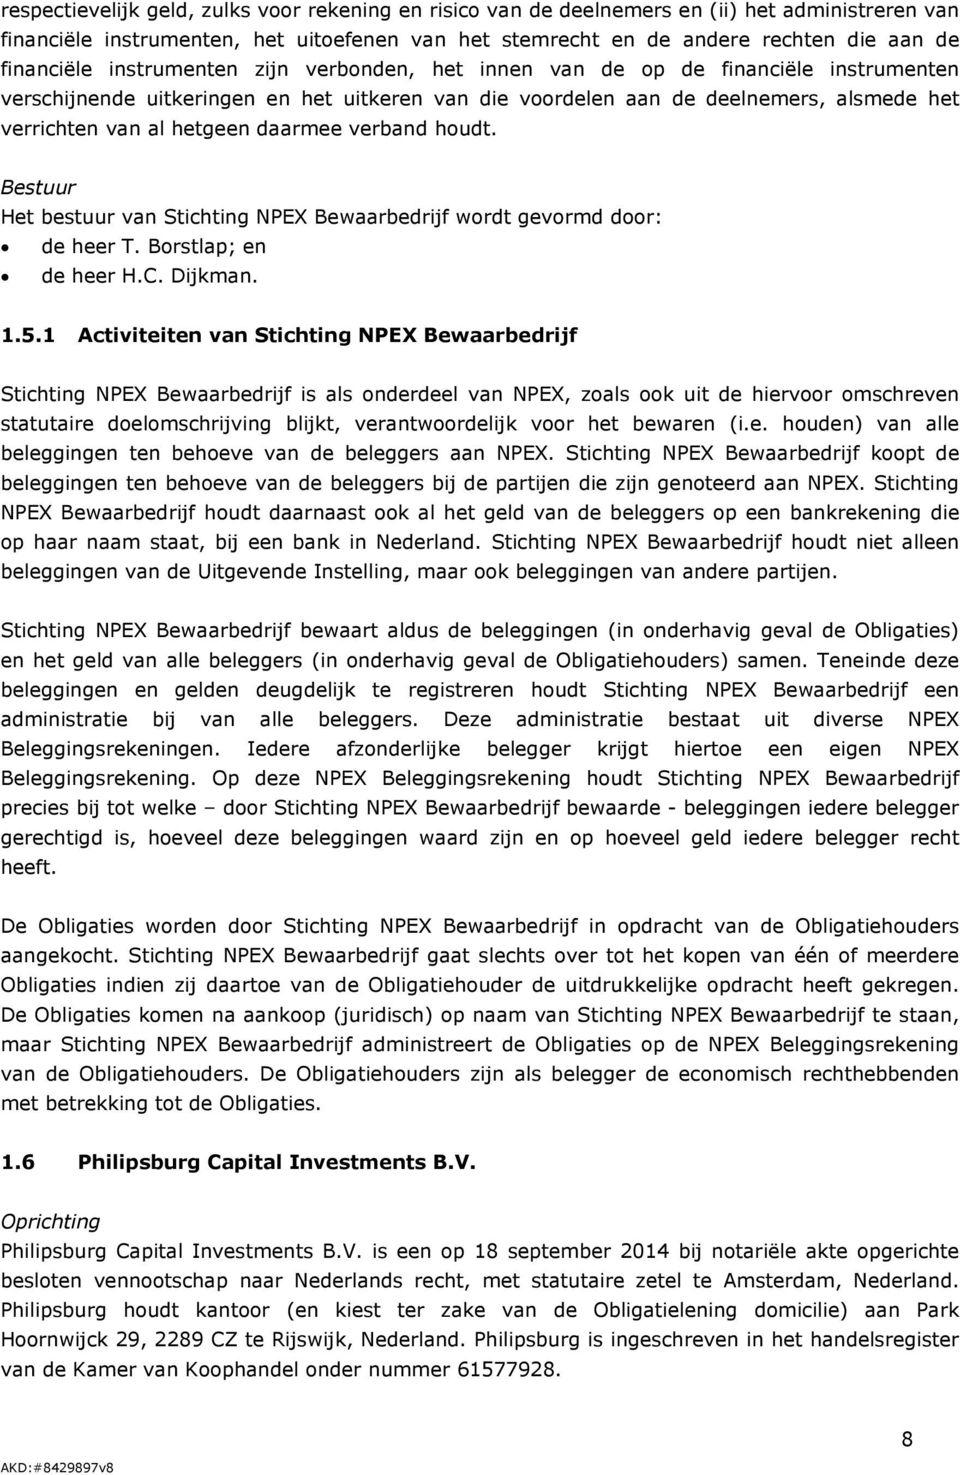 hetgeen daarmee verband houdt. Bestuur Het bestuur van Stichting NPEX Bewaarbedrijf wordt gevormd door: de heer T. Borstlap; en de heer H.C. Dijkman. 1.5.